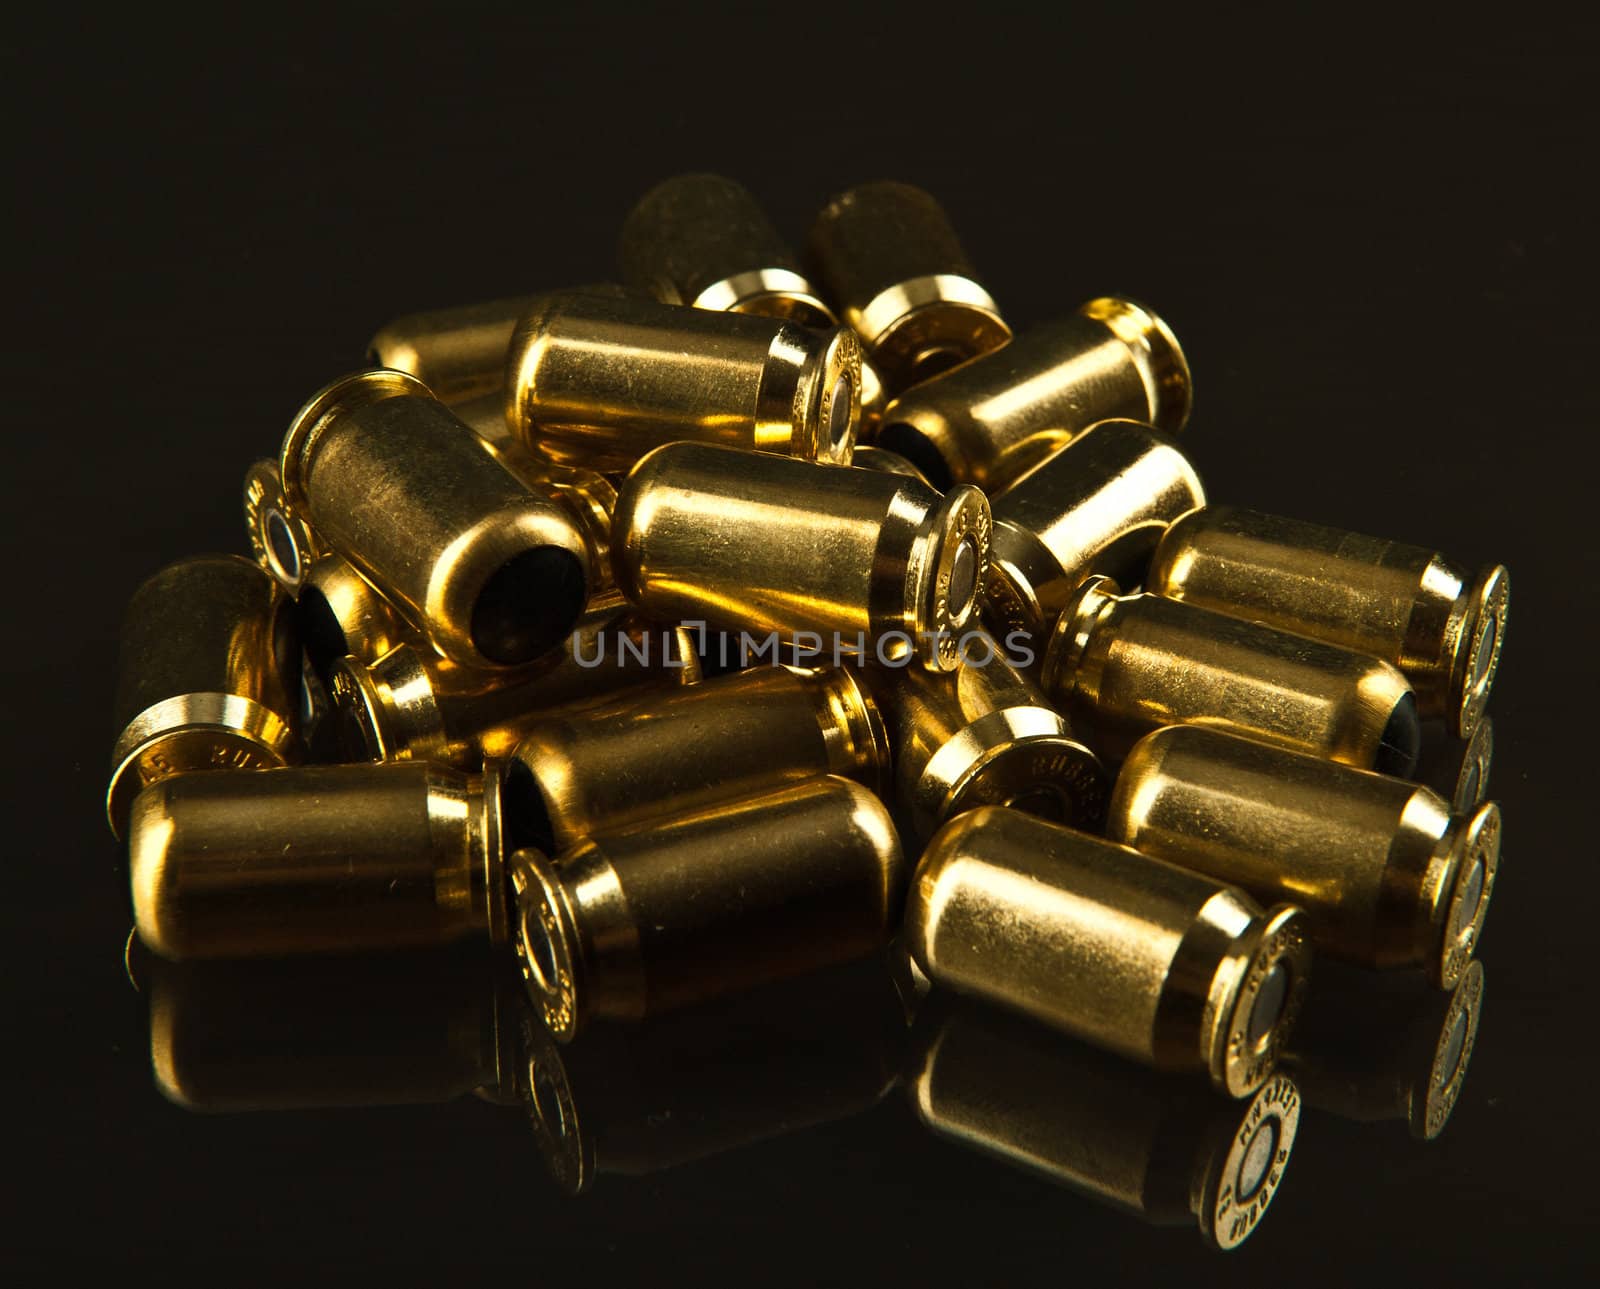 Gun ammunition by avix